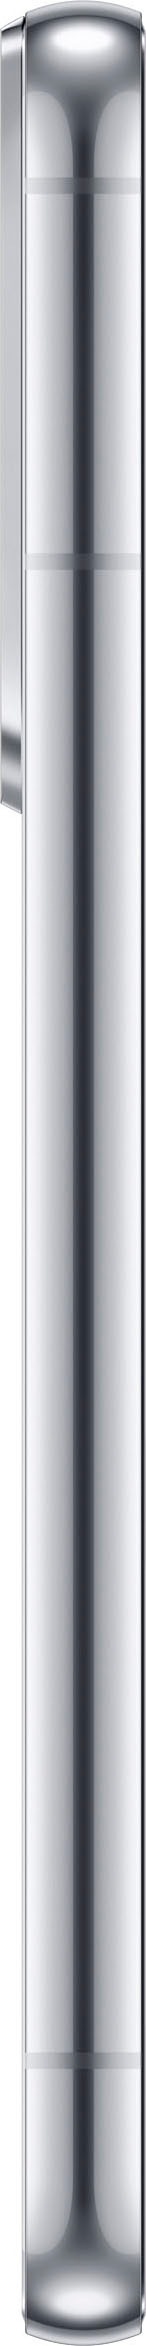 SAMSUNG Galaxy S22, 128 GB, Phantom White